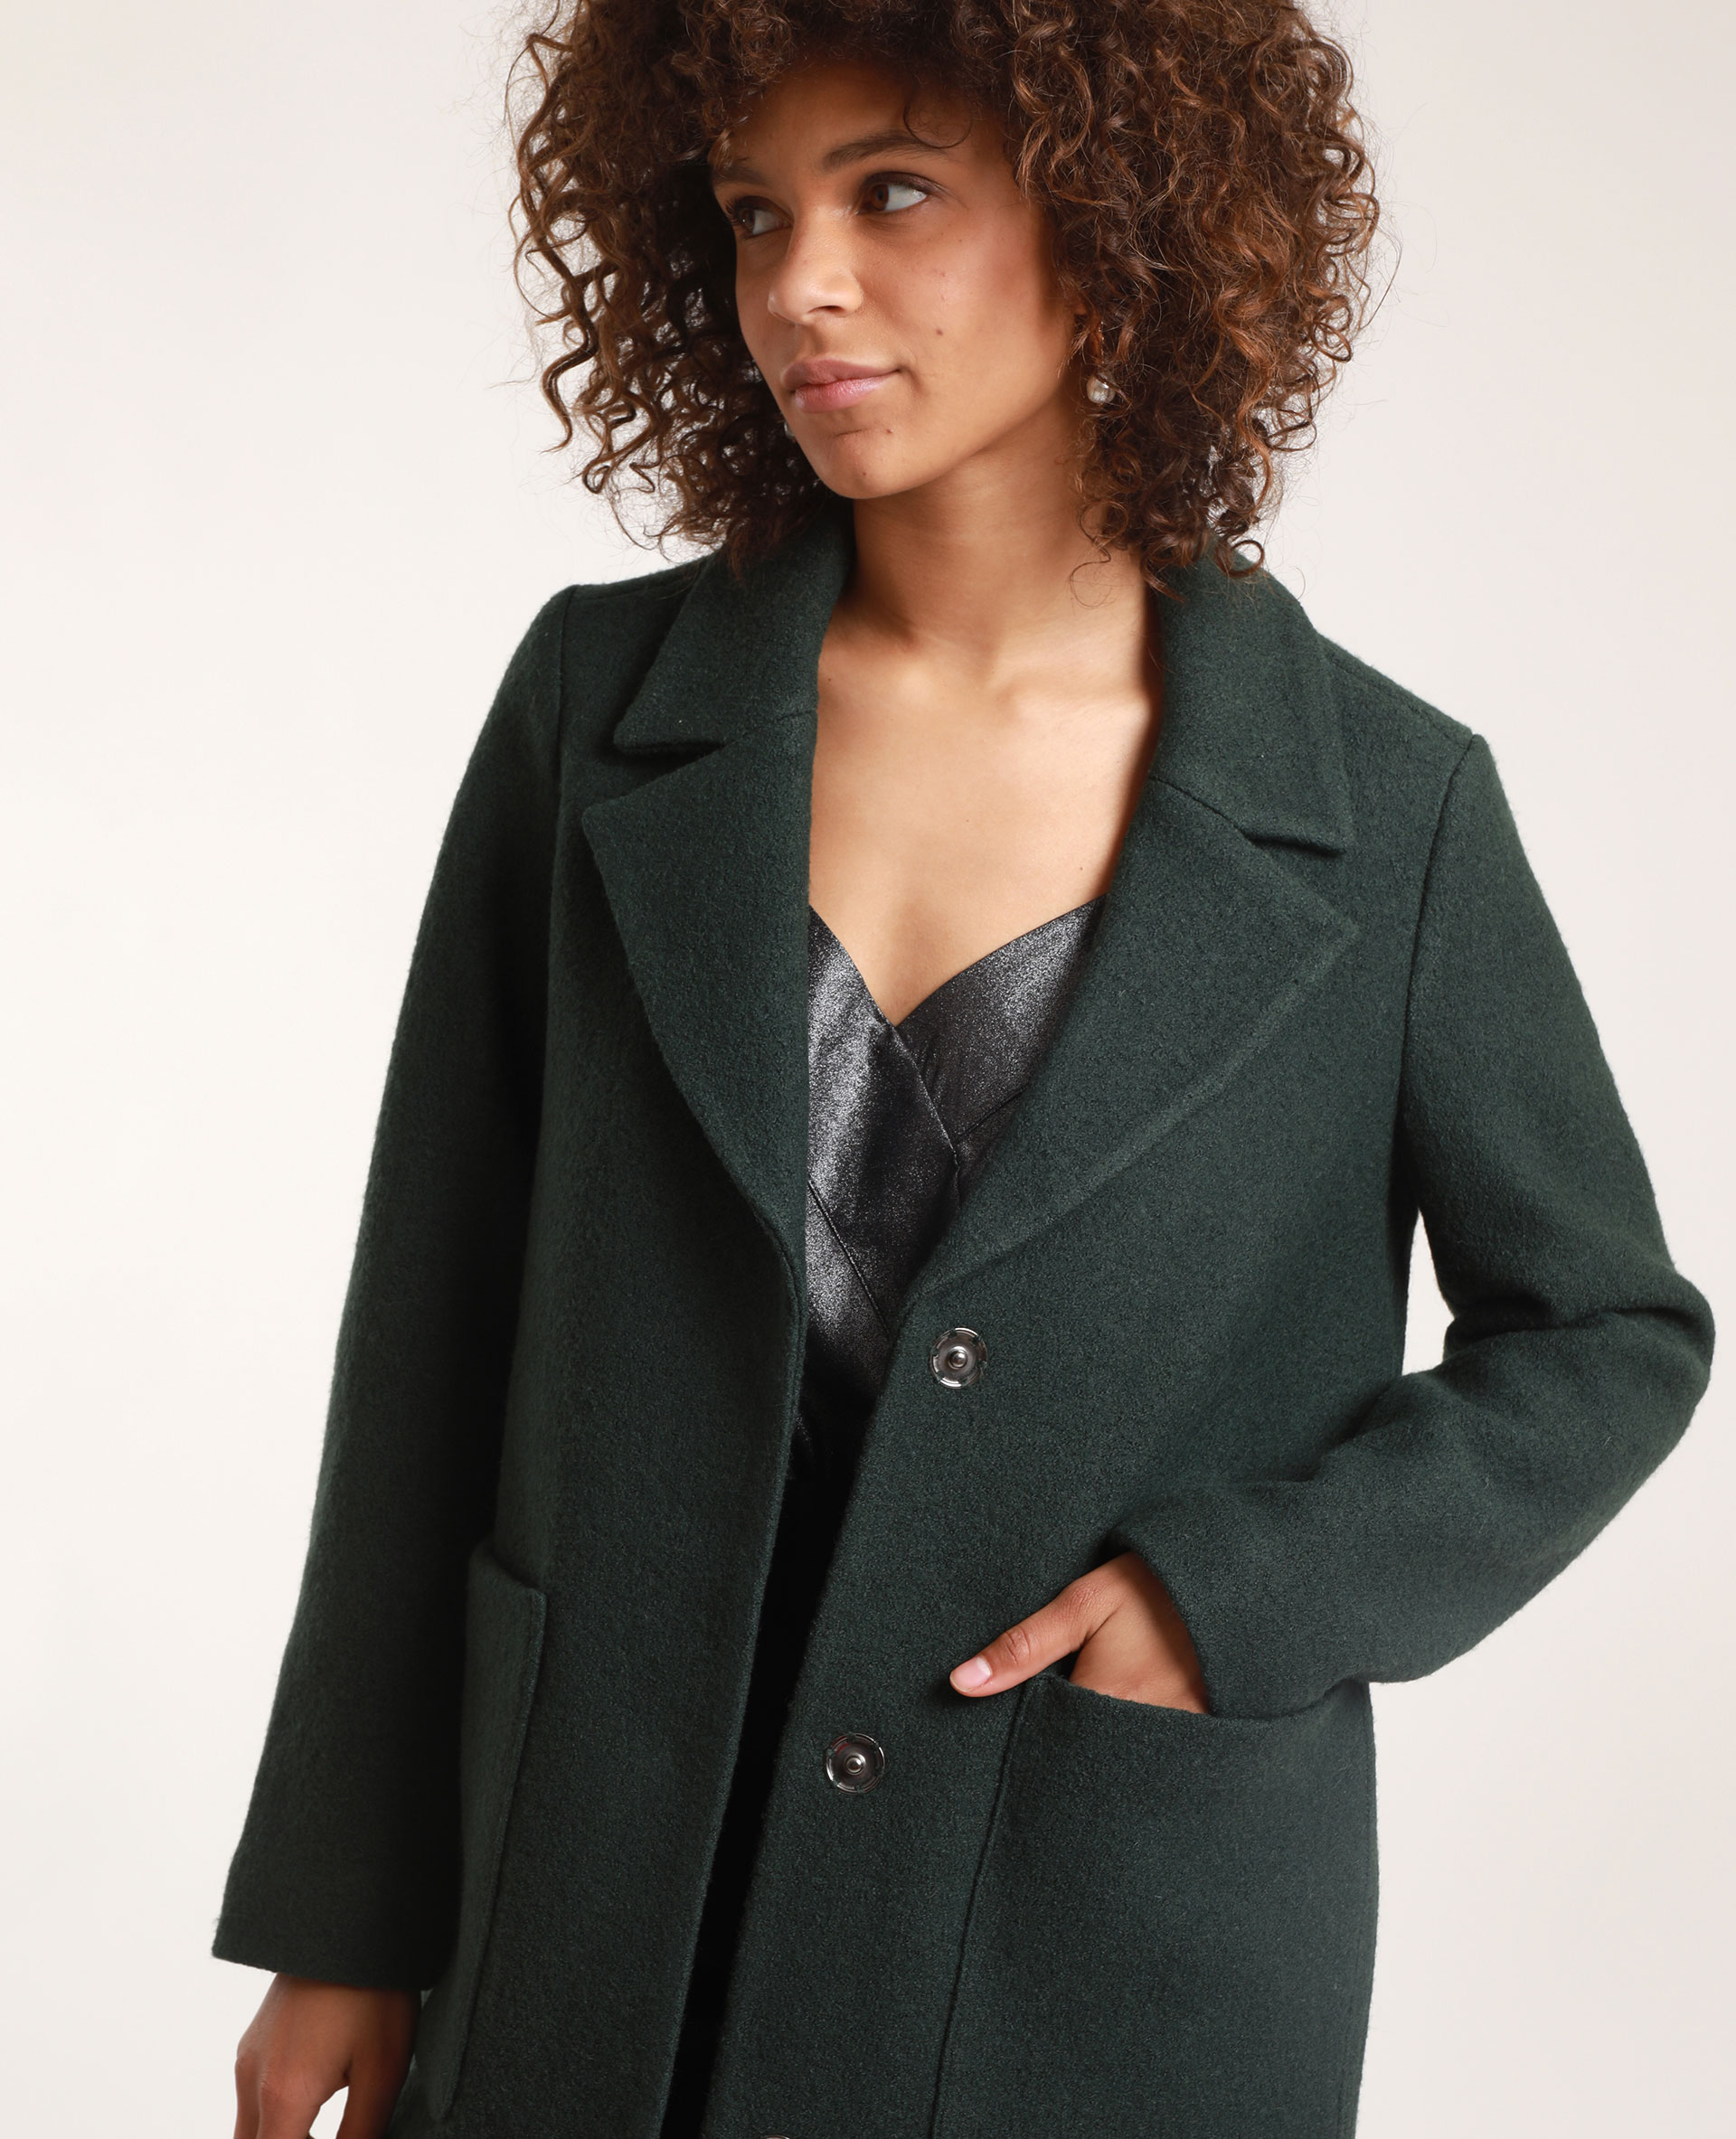 manteau femme vert sapin